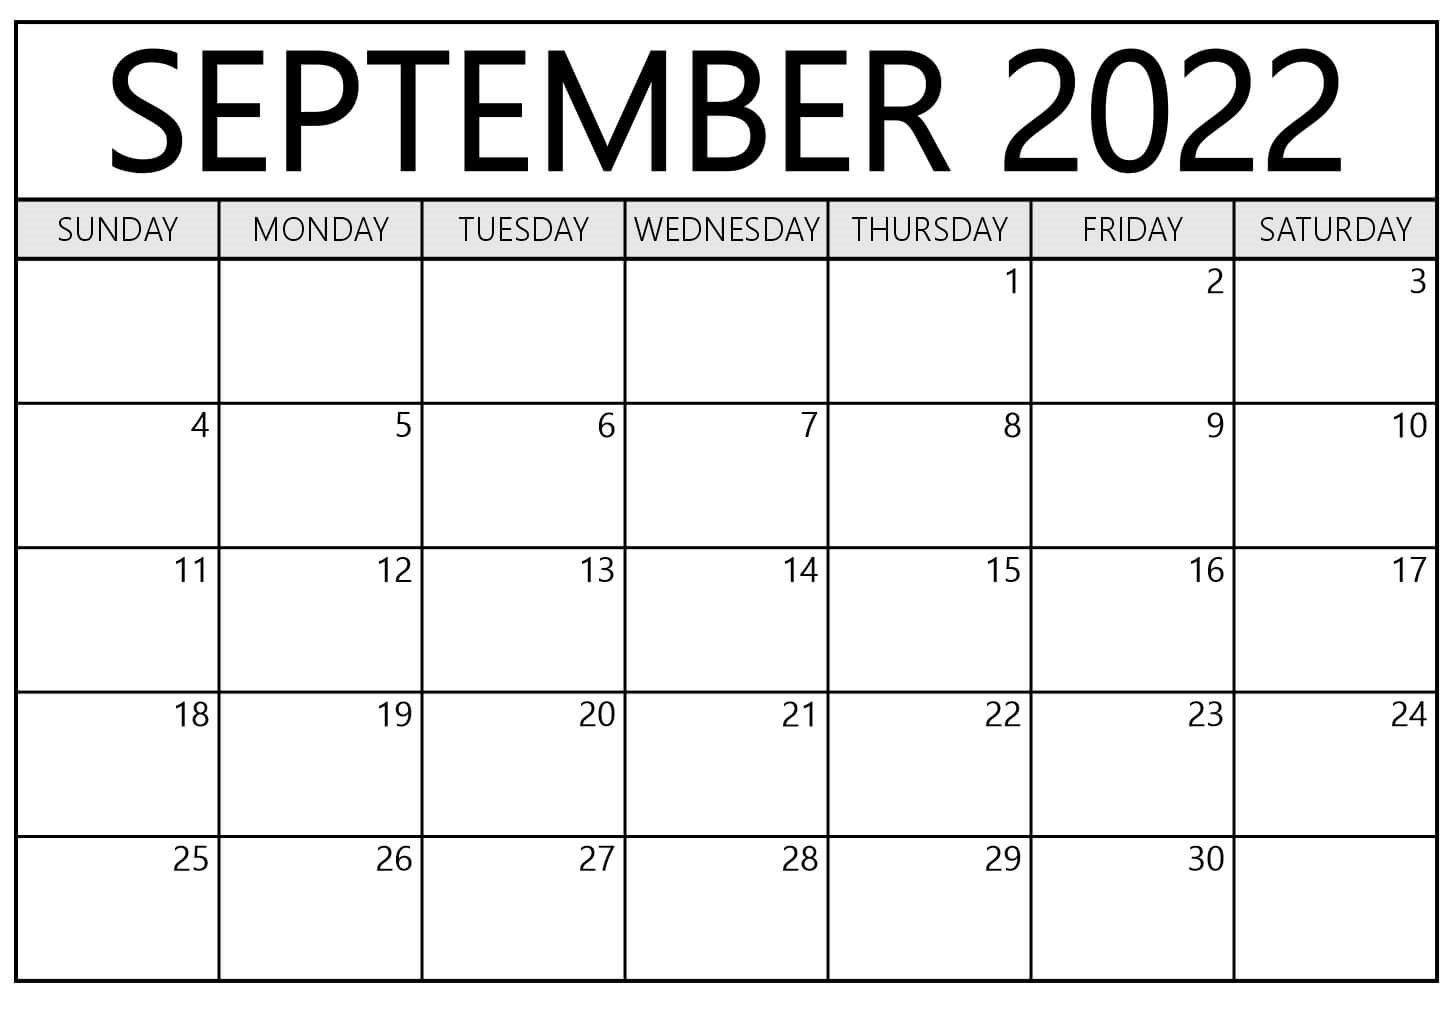 September 2022 Calendar With Holidays PDF